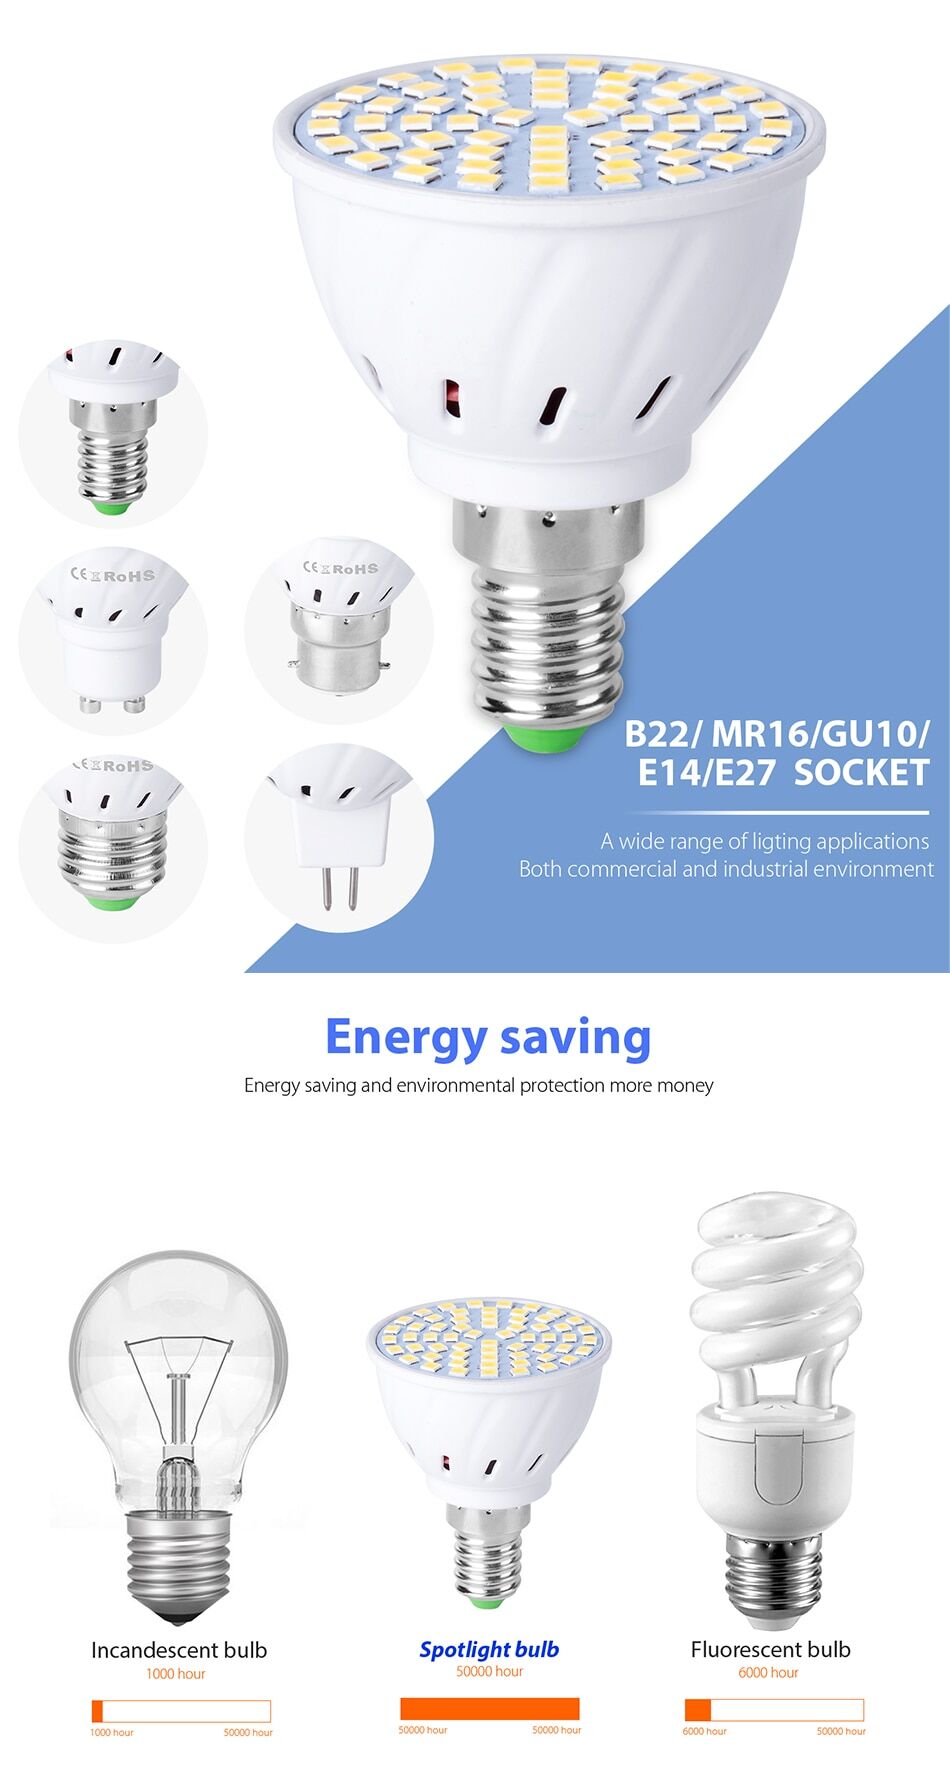 10pce 220V spot light bulbs LED 4w 6w 8w socket E27 E14 GU10 MR16 B22 € 26,21